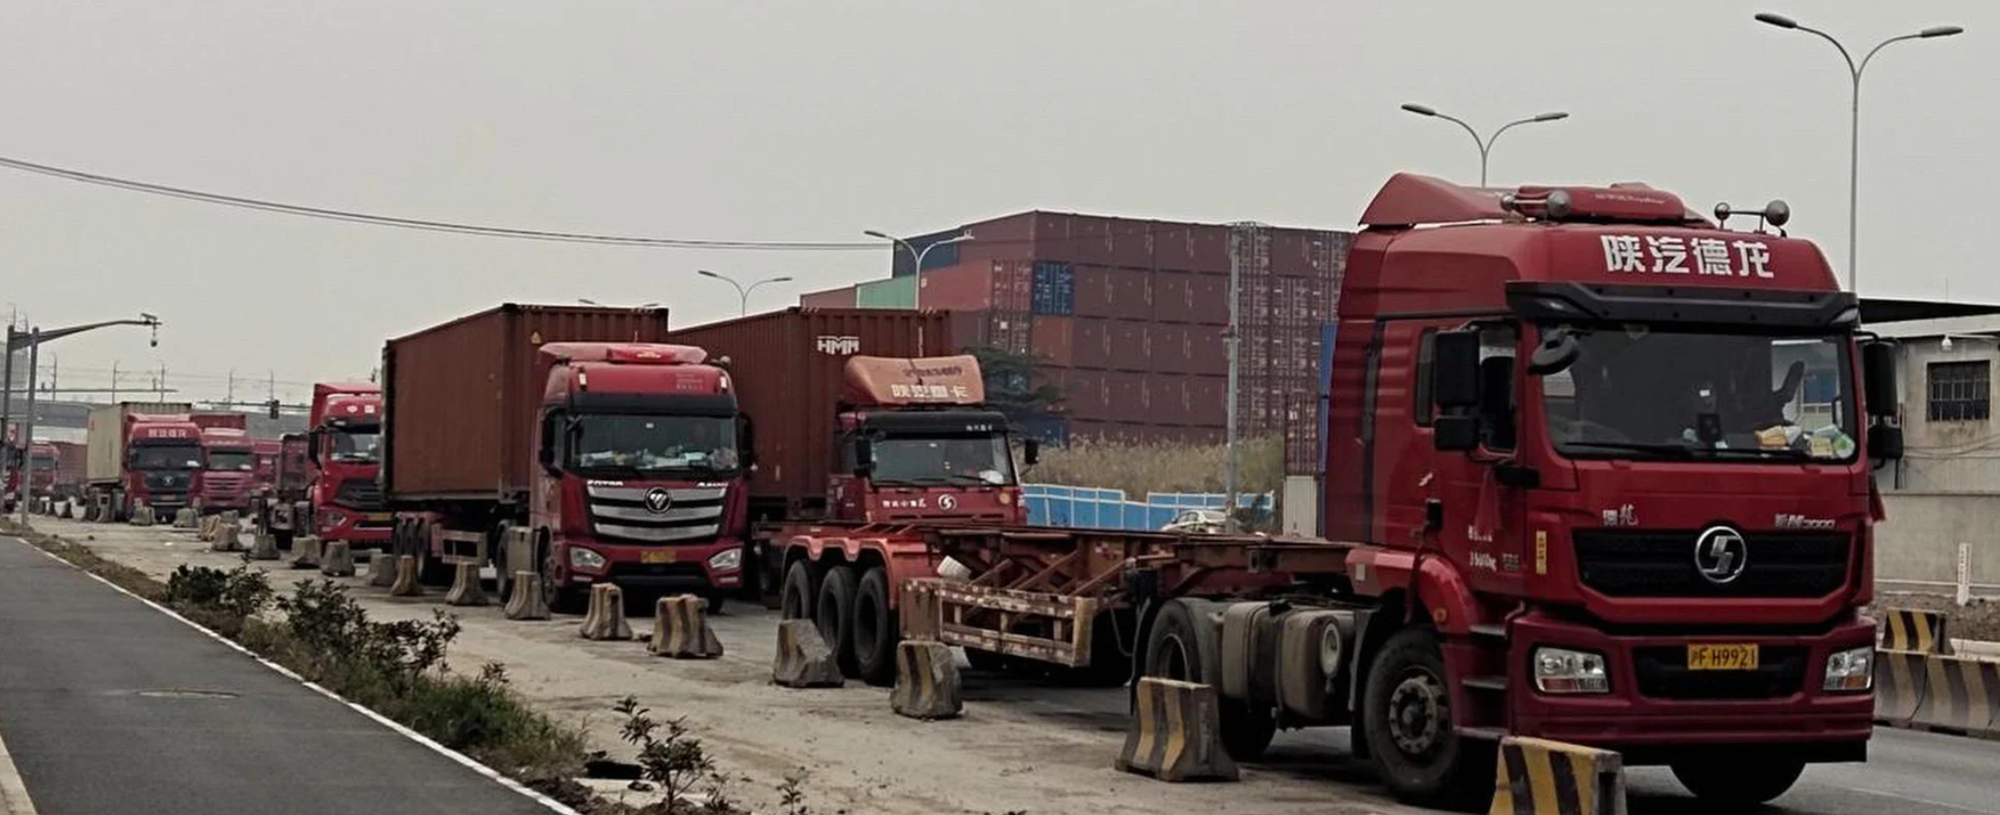 Đơn hàng toàn cầu giảm mạnh, container rỗng chất đống tại cảng biển Trung Quốc - Ảnh 2.